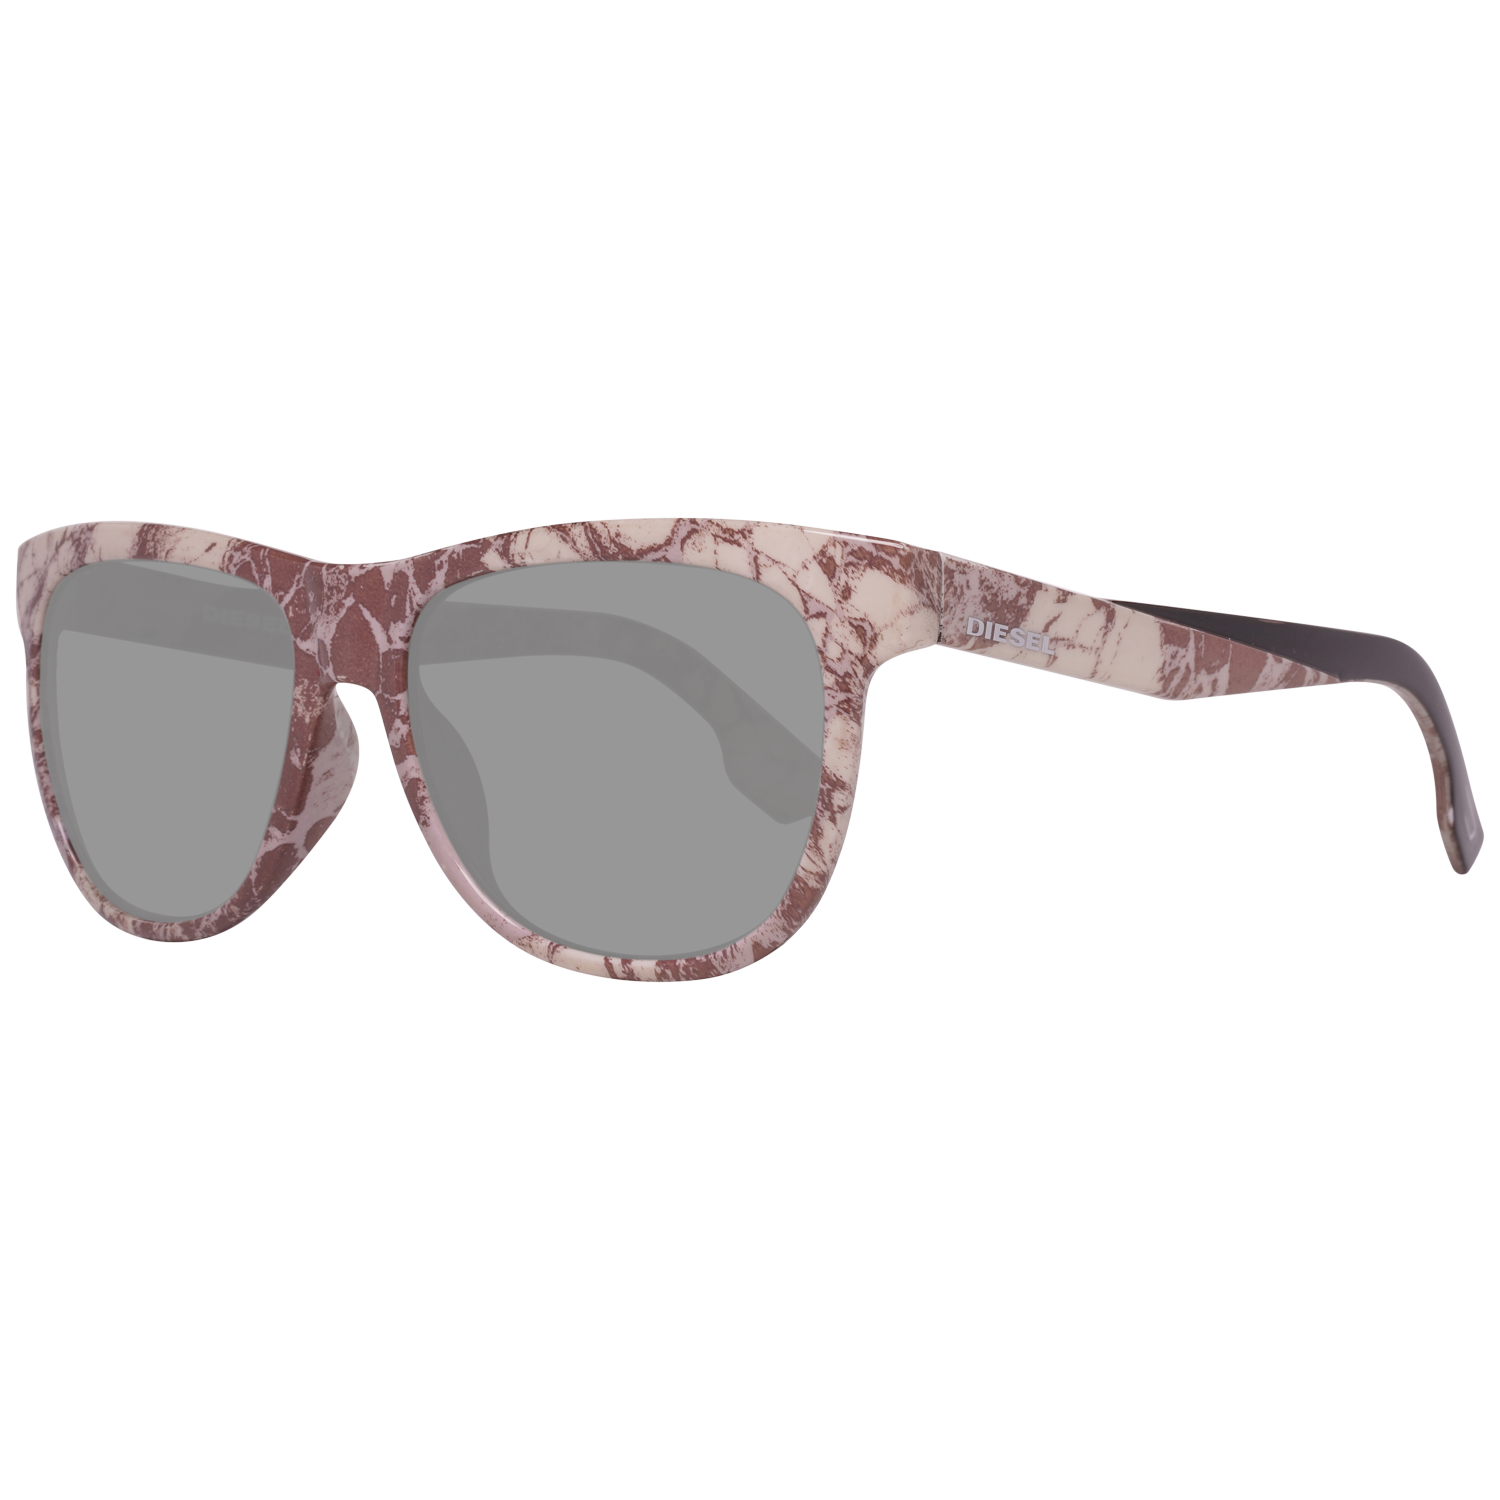 Diesel Sunglasses DL9076 05N 56